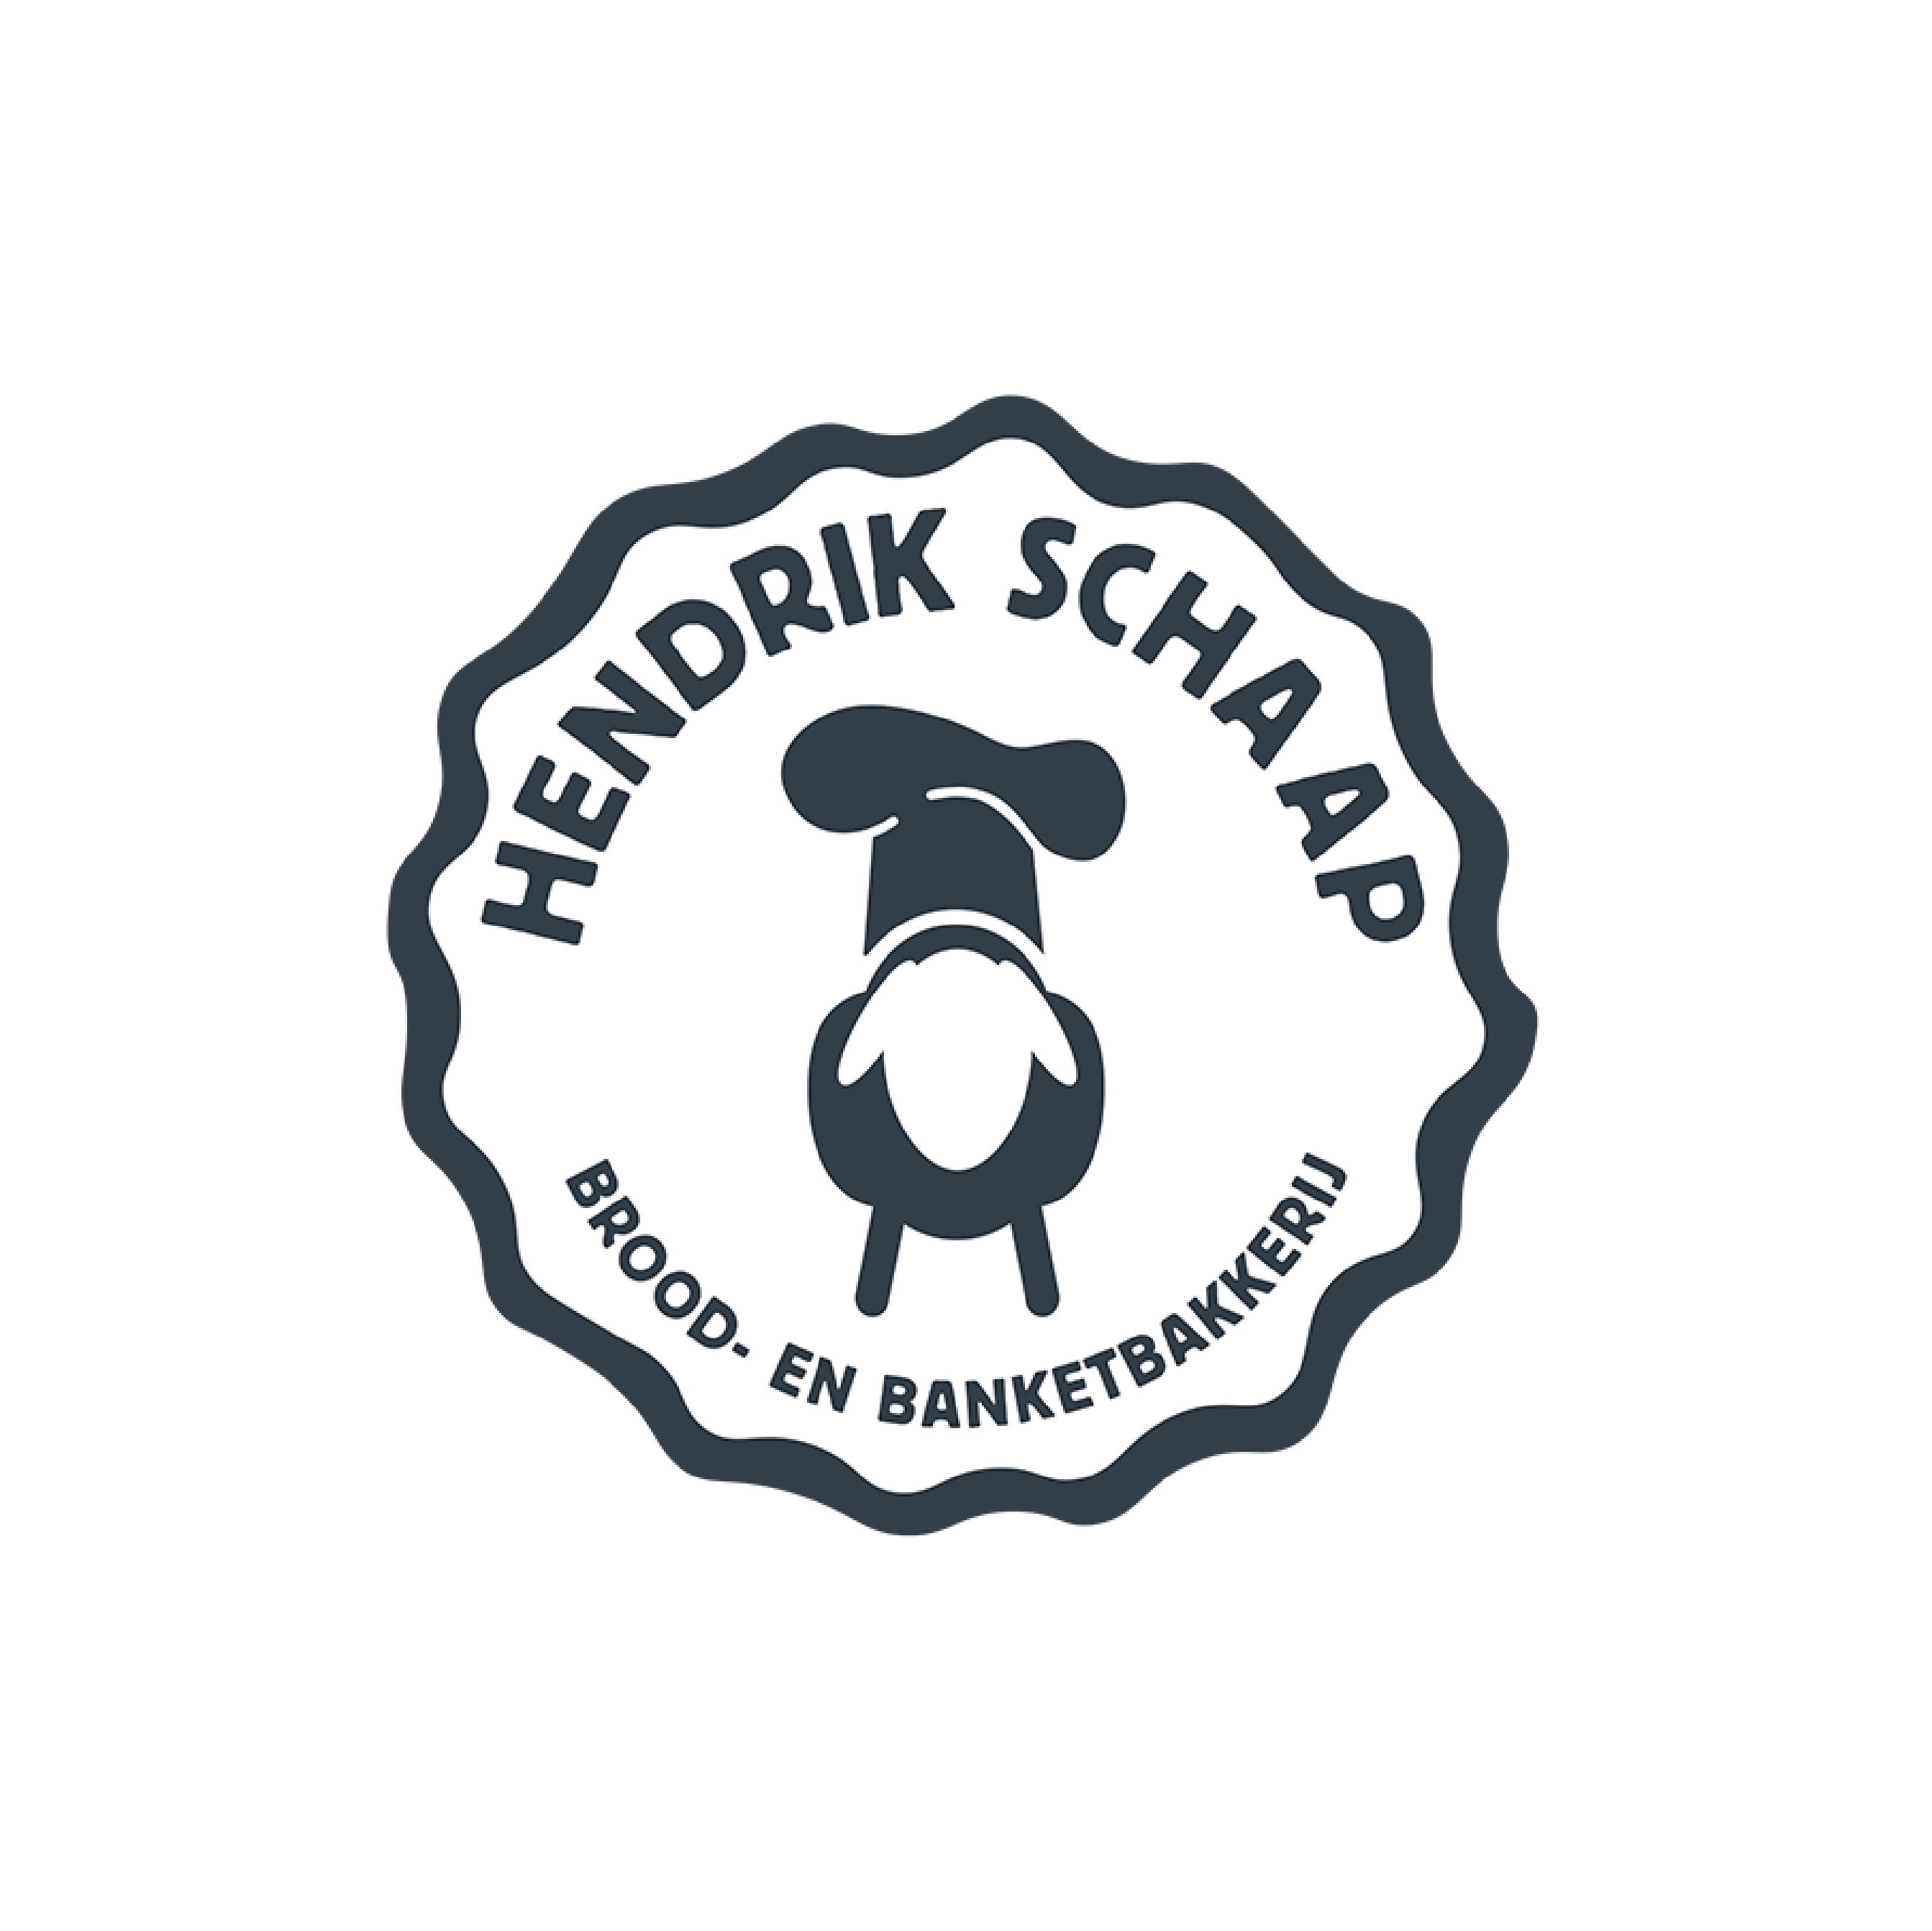 Bakkerij Schaap Sponsor